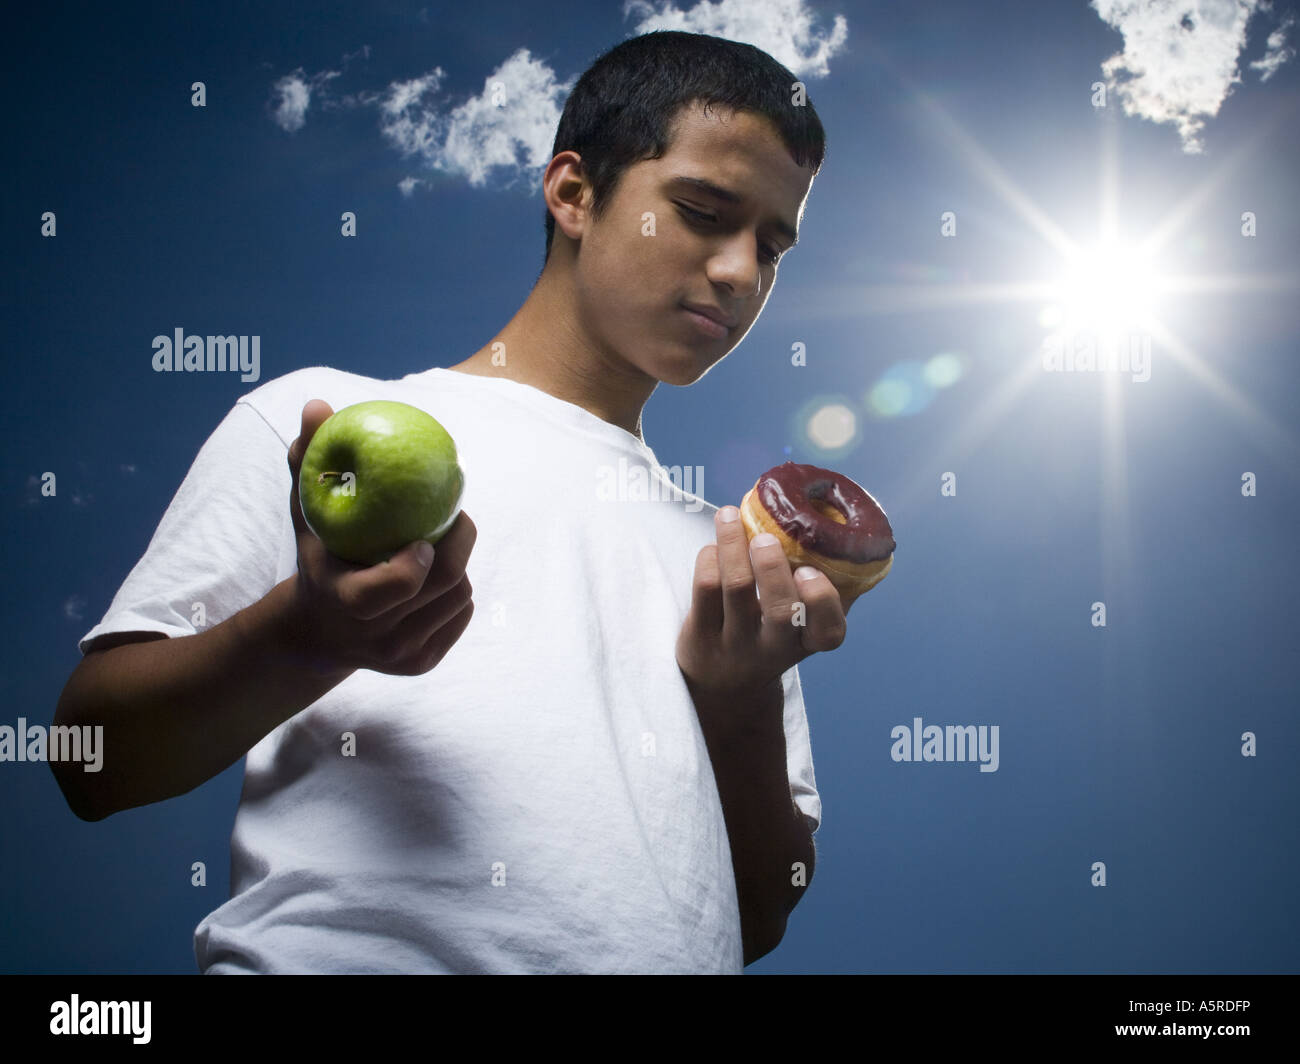 Basso angolo di visione di un ragazzo adolescente tenendo un Apple e una ciambella Foto Stock